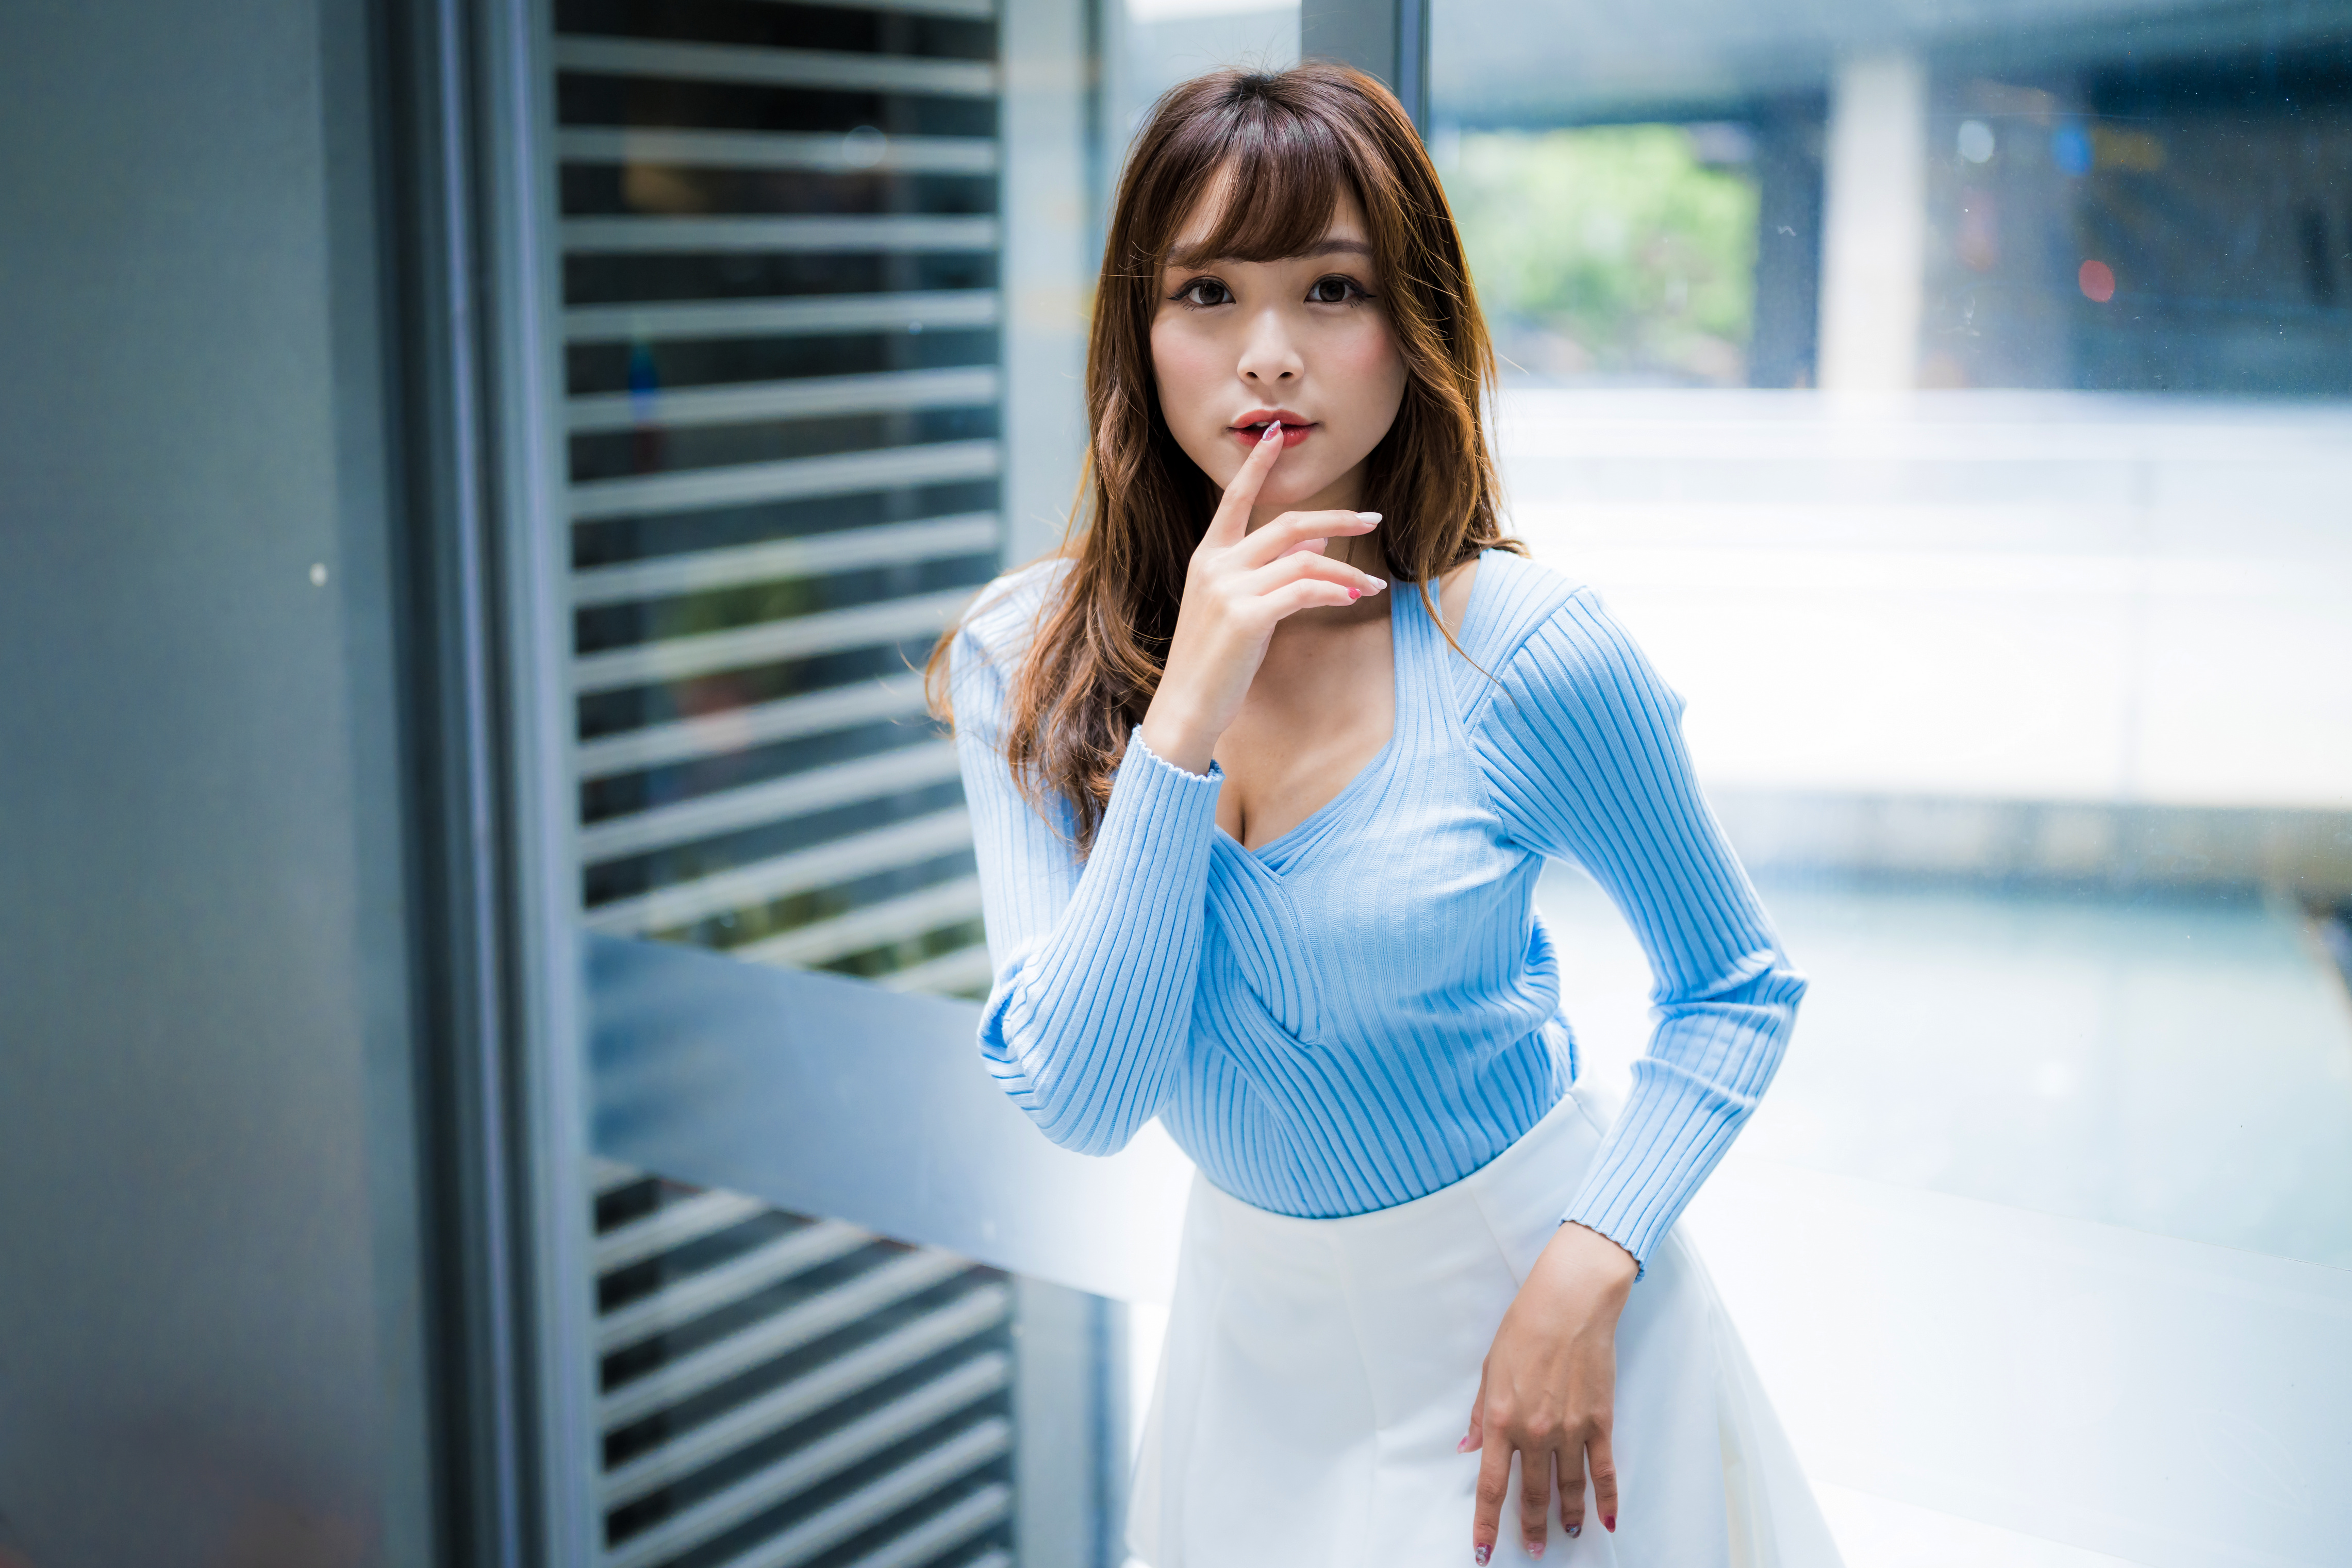 Asian Model Women Long Hair Brunette Depth Of Field White Skirt Blue Shirt Window Finger On Lips 4562x3042